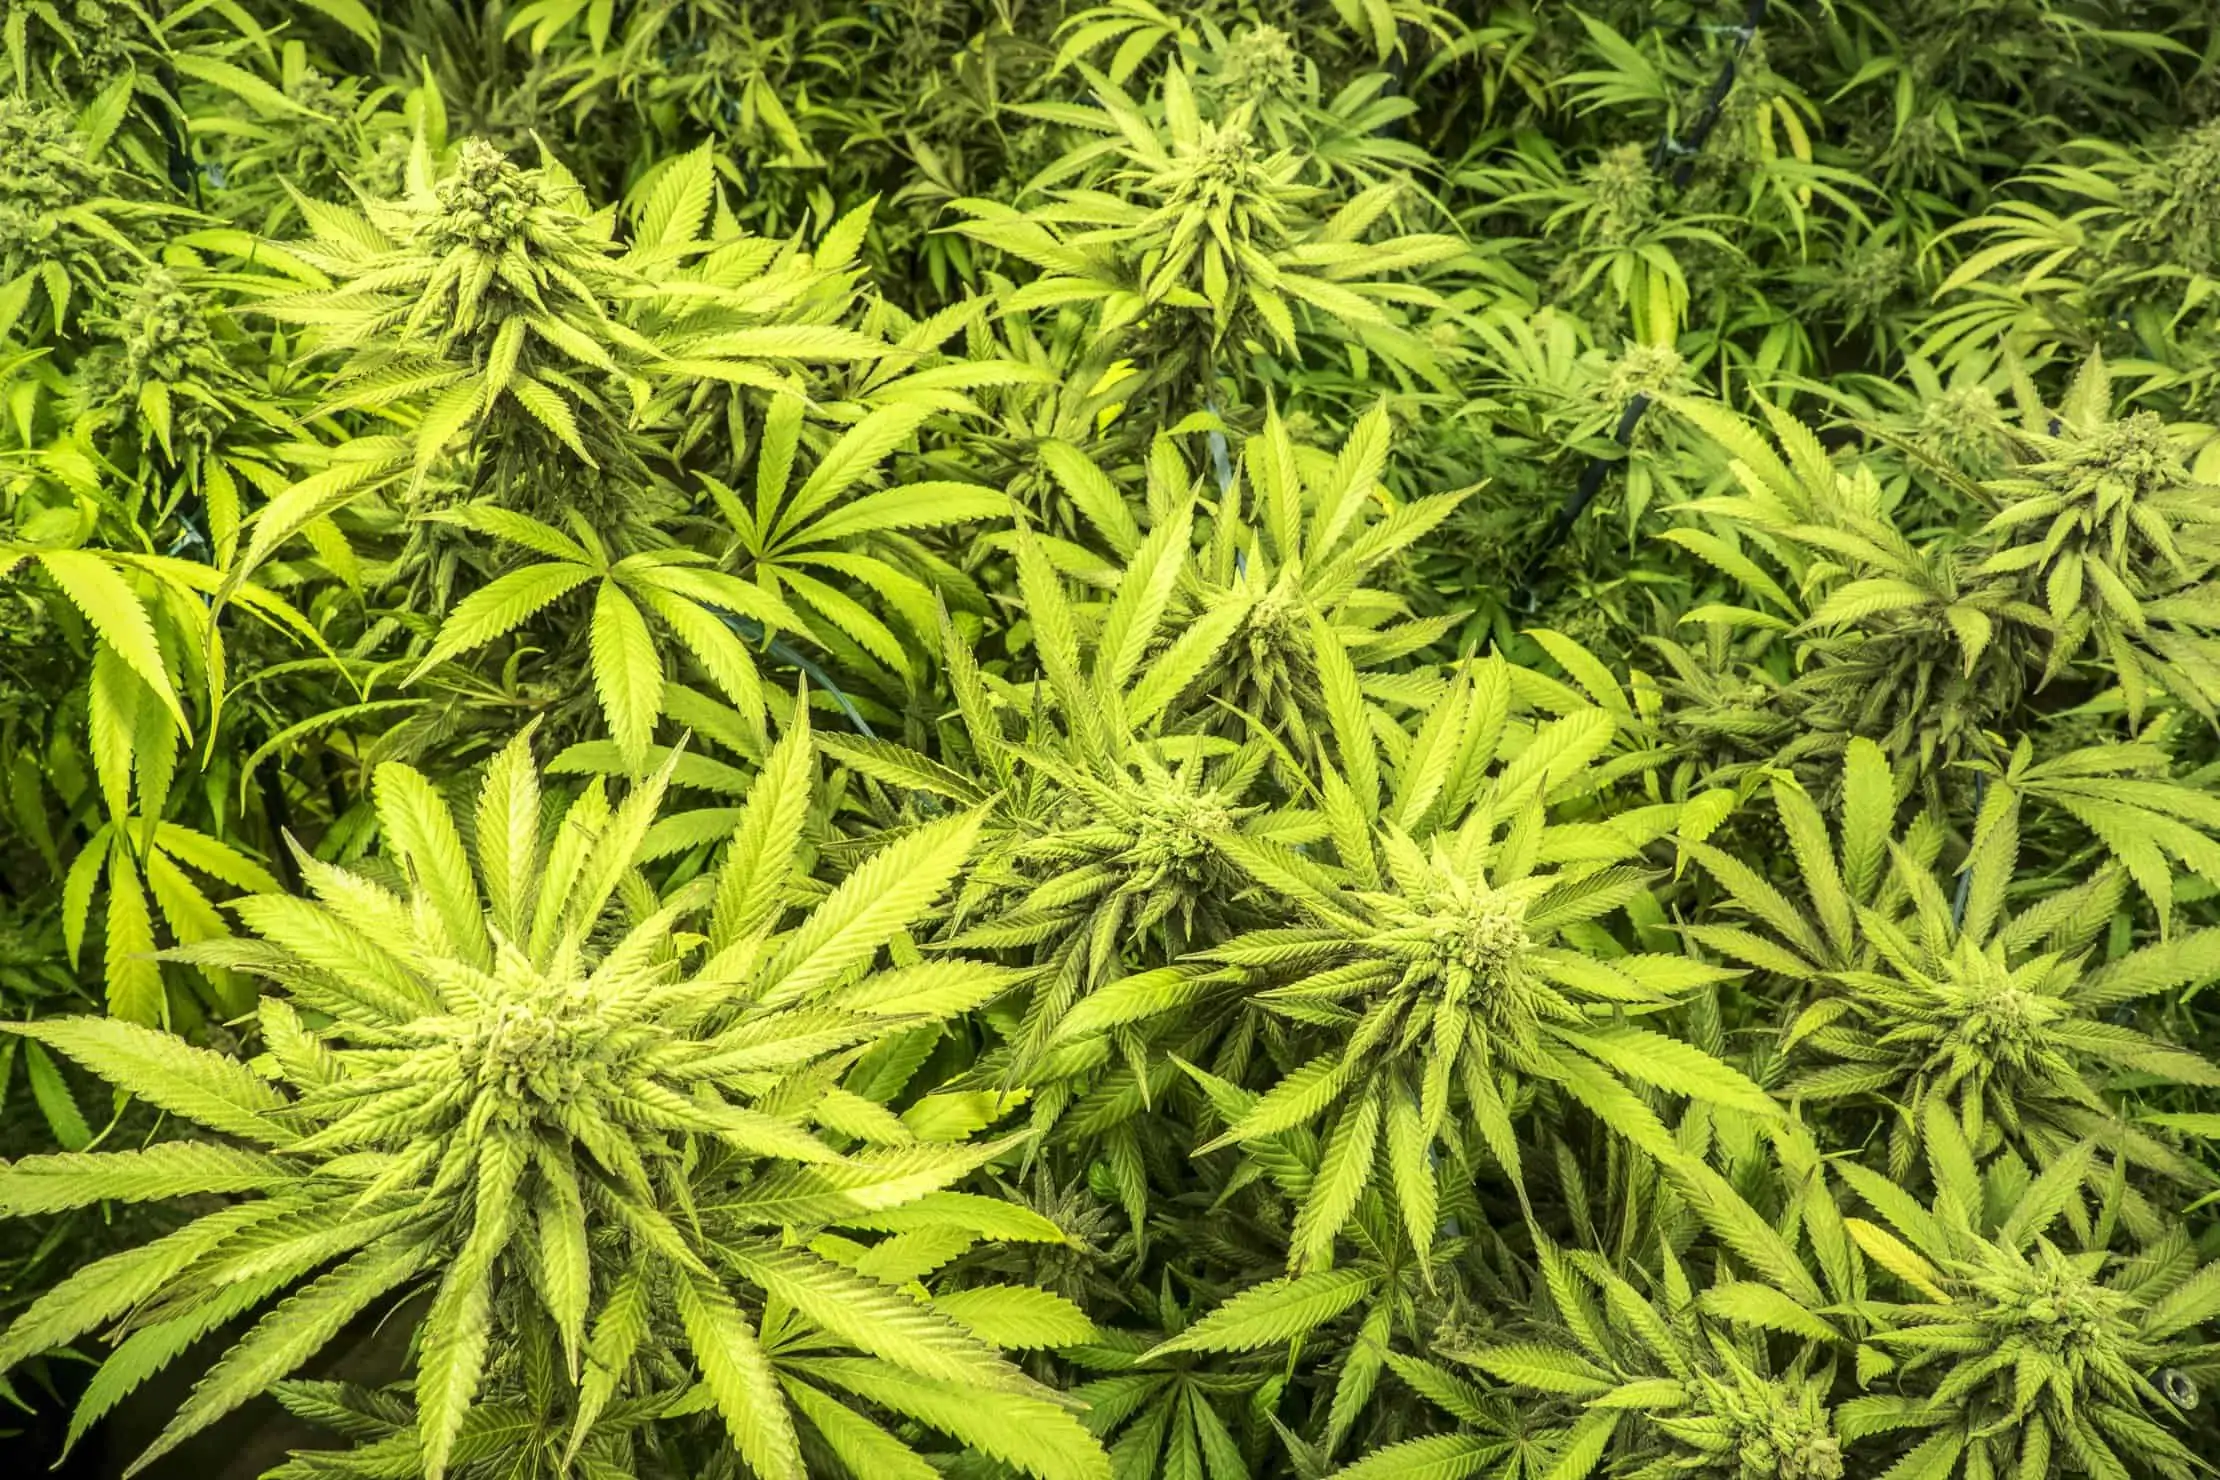 Planning You Indoor Mixed Marijuana Grow. Cannabis plants.